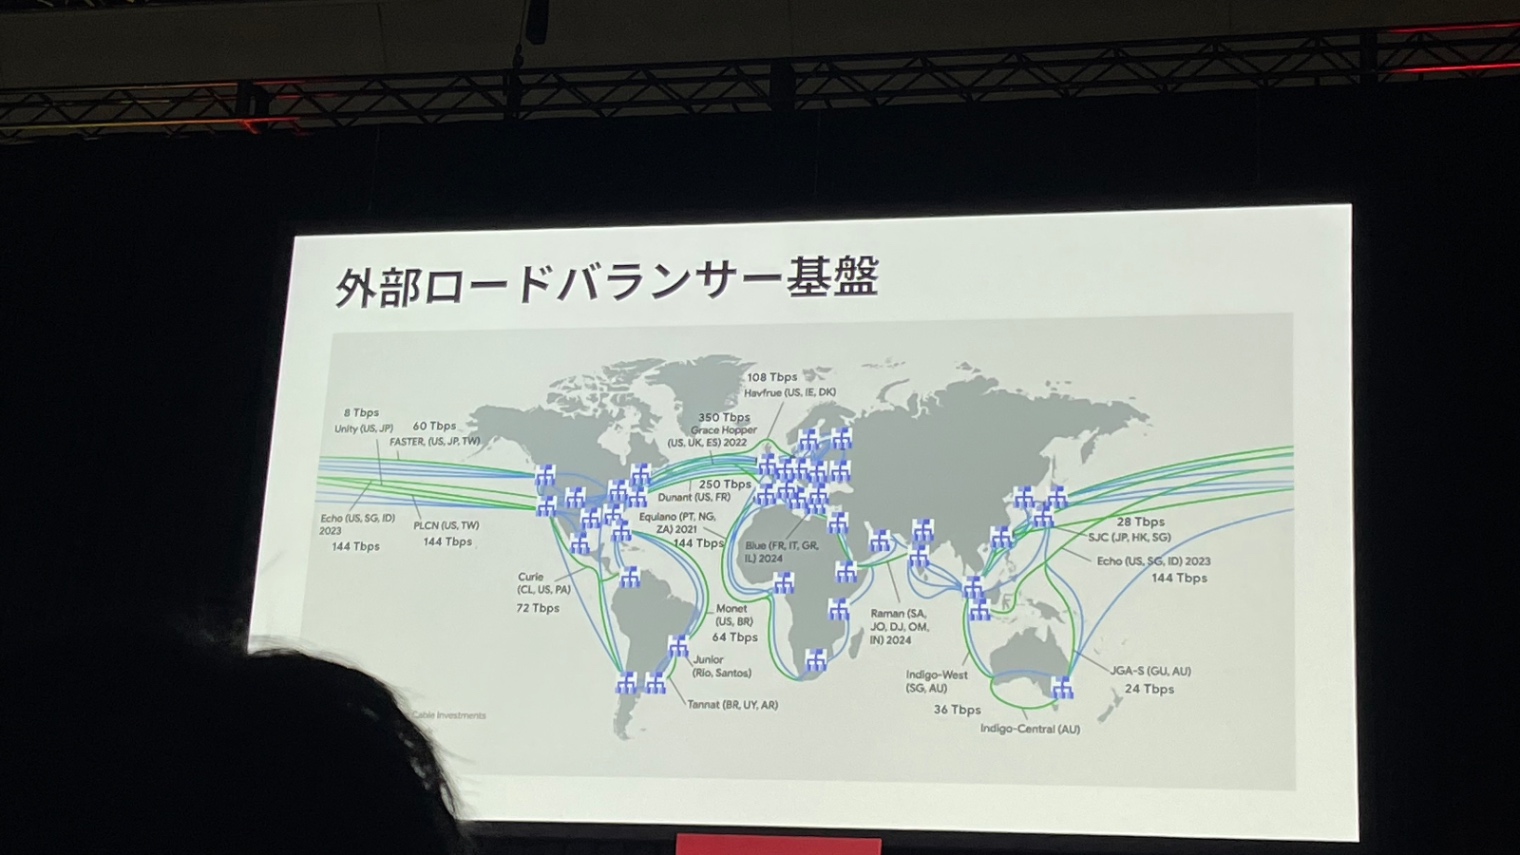 外部ロードバランサー基盤のスライド。世界地図と共にどこにLBが配置されていてどのようにネットワークが繋がっているかを指している